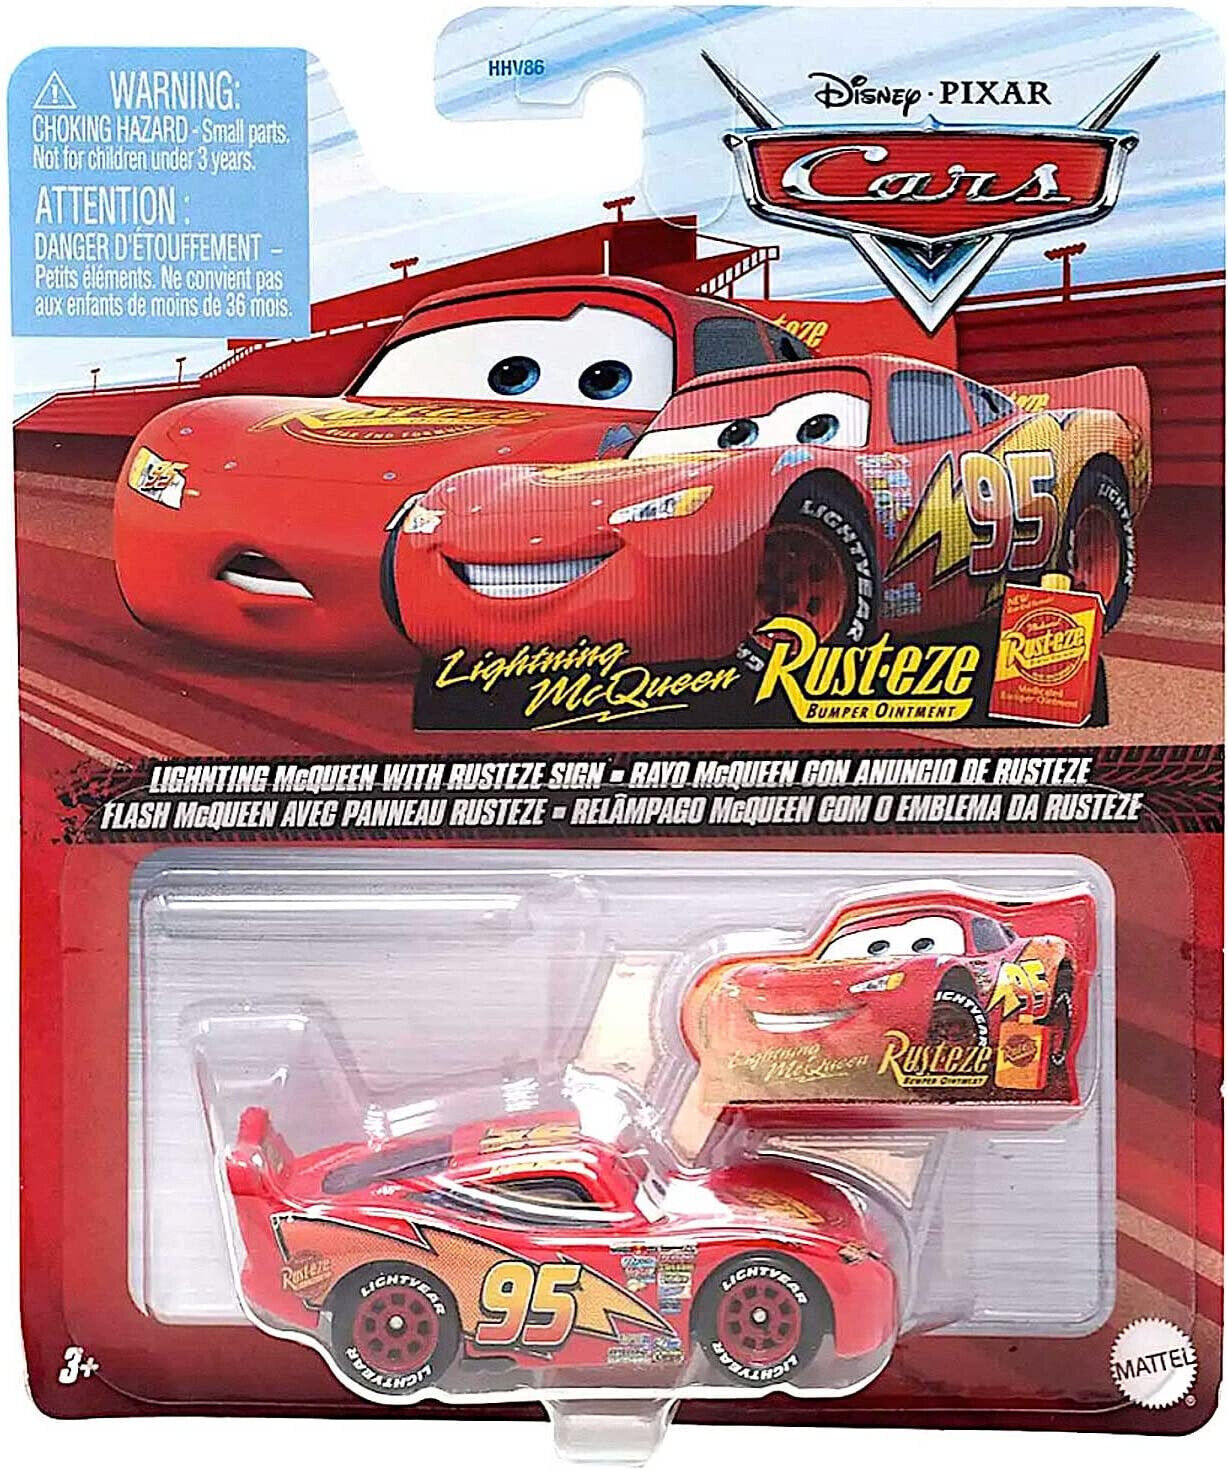 2022 Disney Pixar Cars Metal Lightning McQueen with Rusteze Sign - New Release!